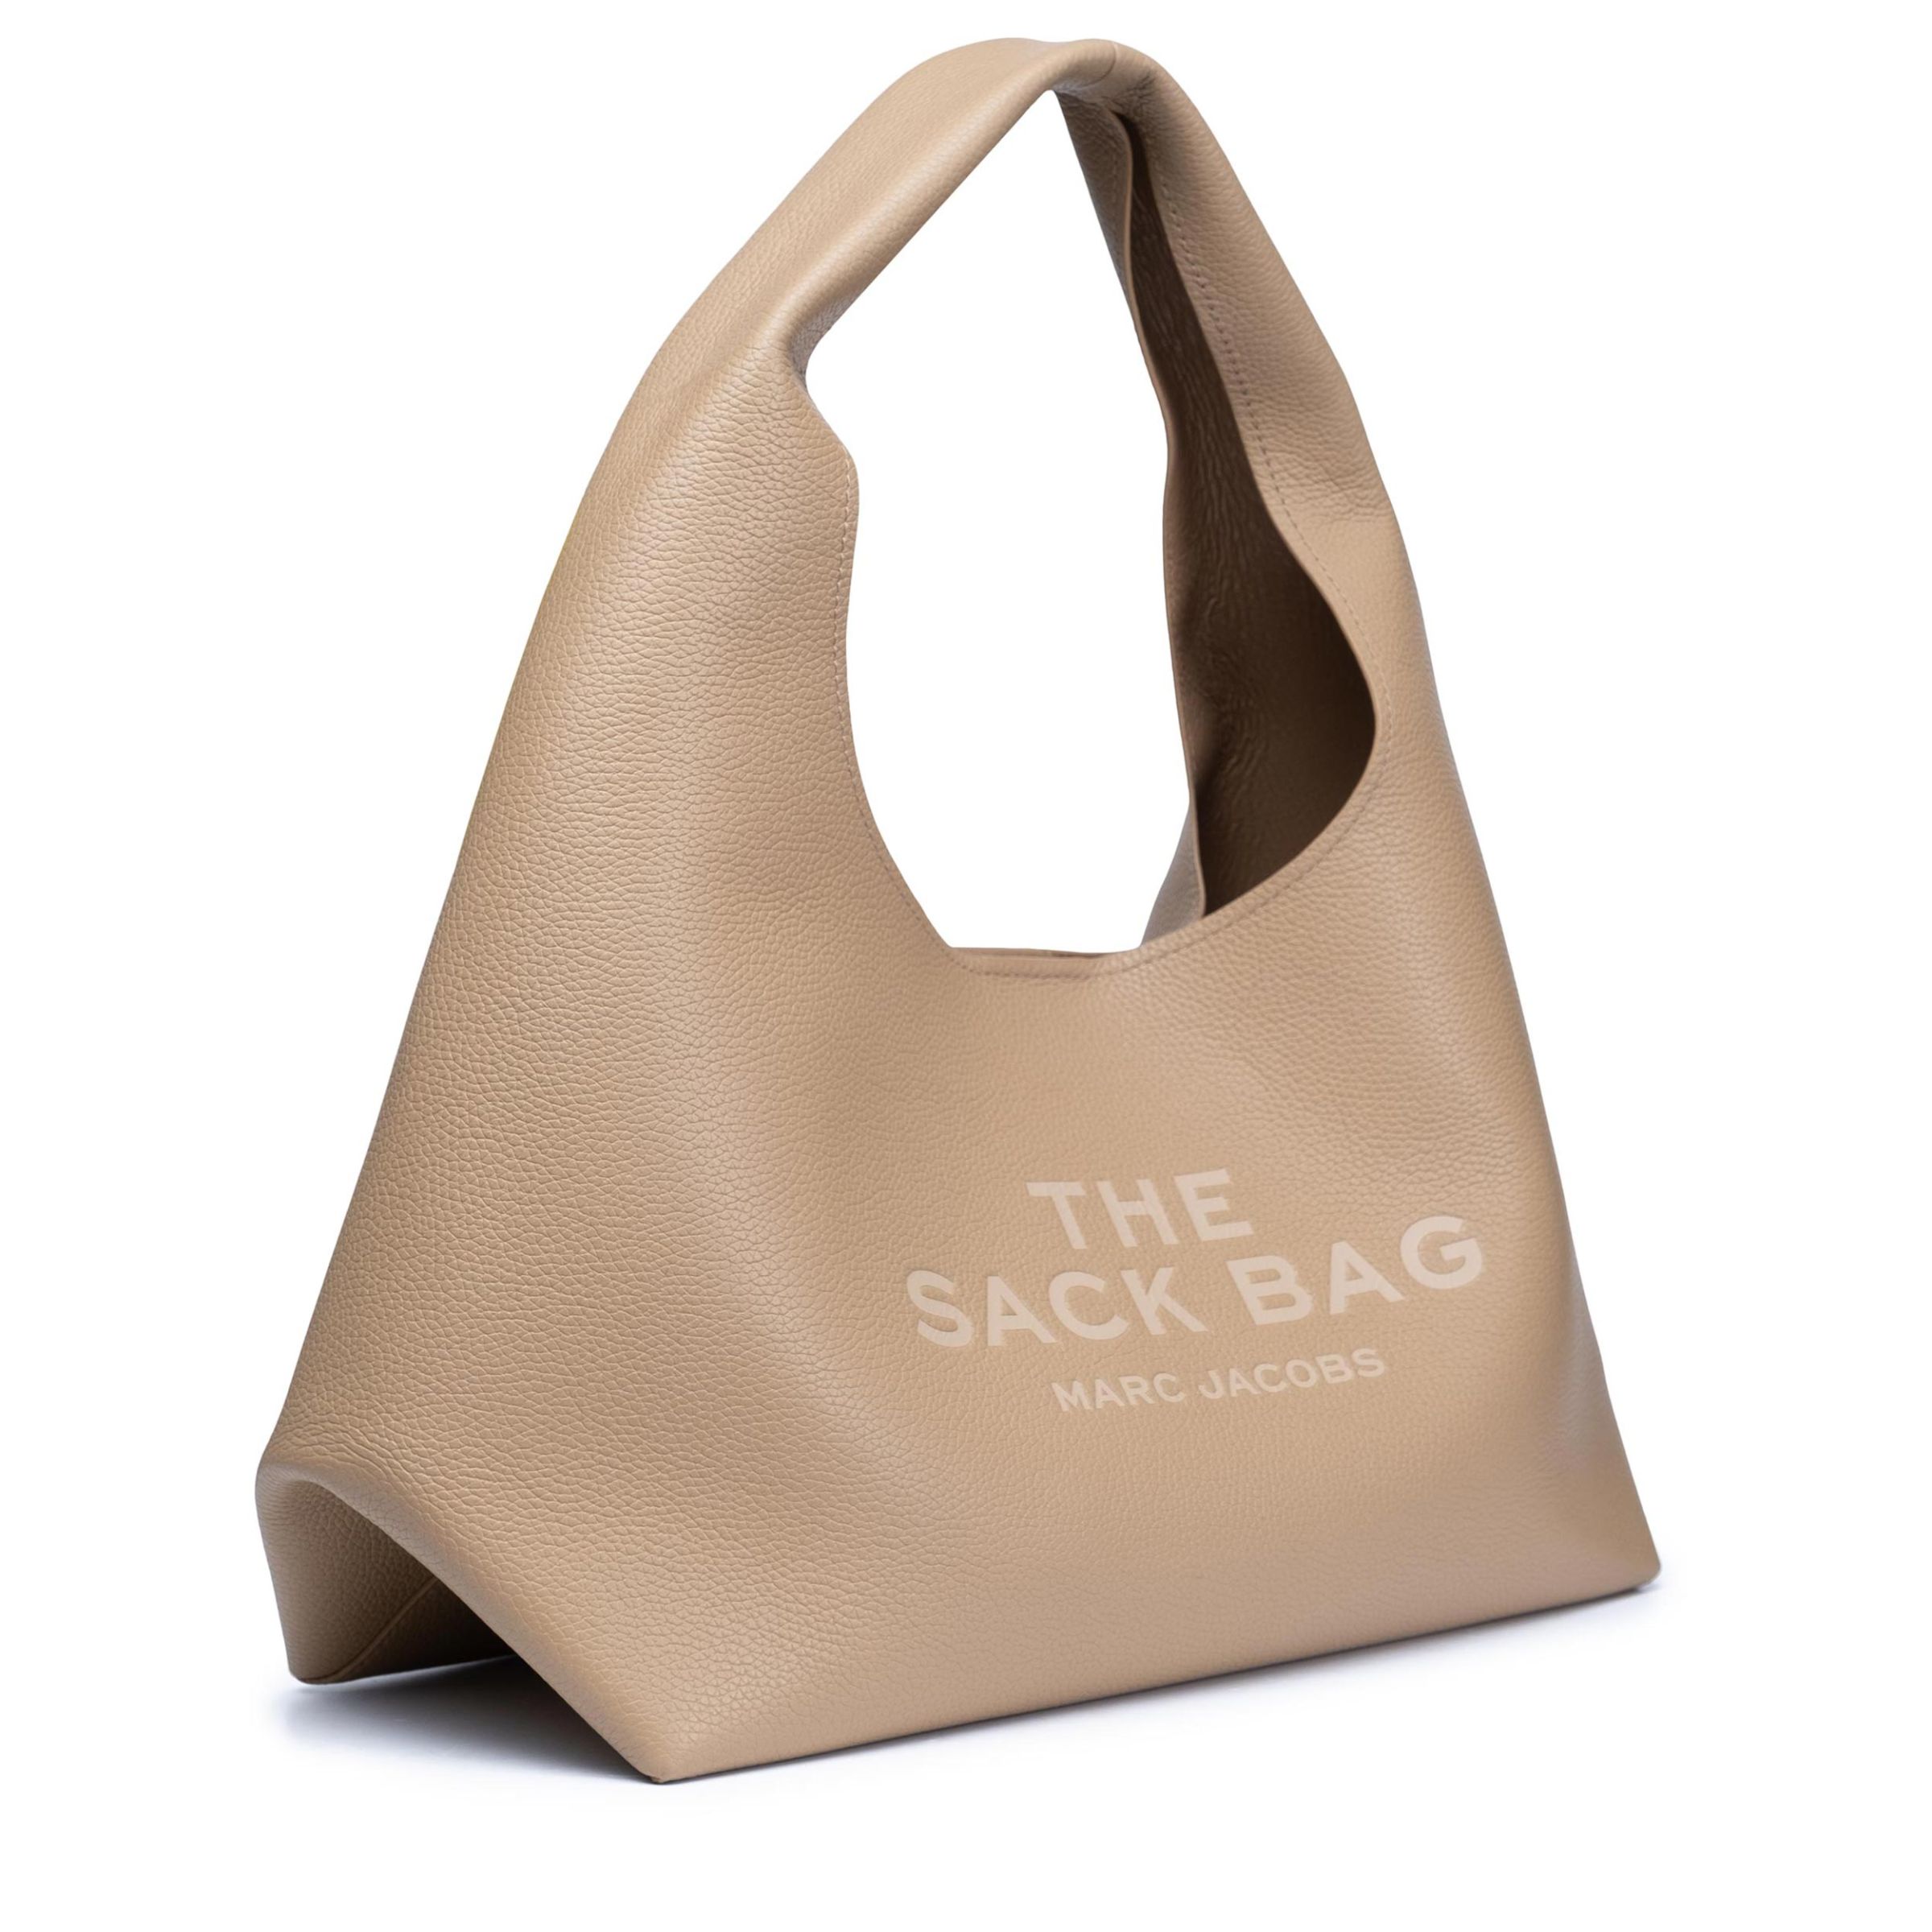 Сумка Marc Jacobs The Sack Bag бежевая